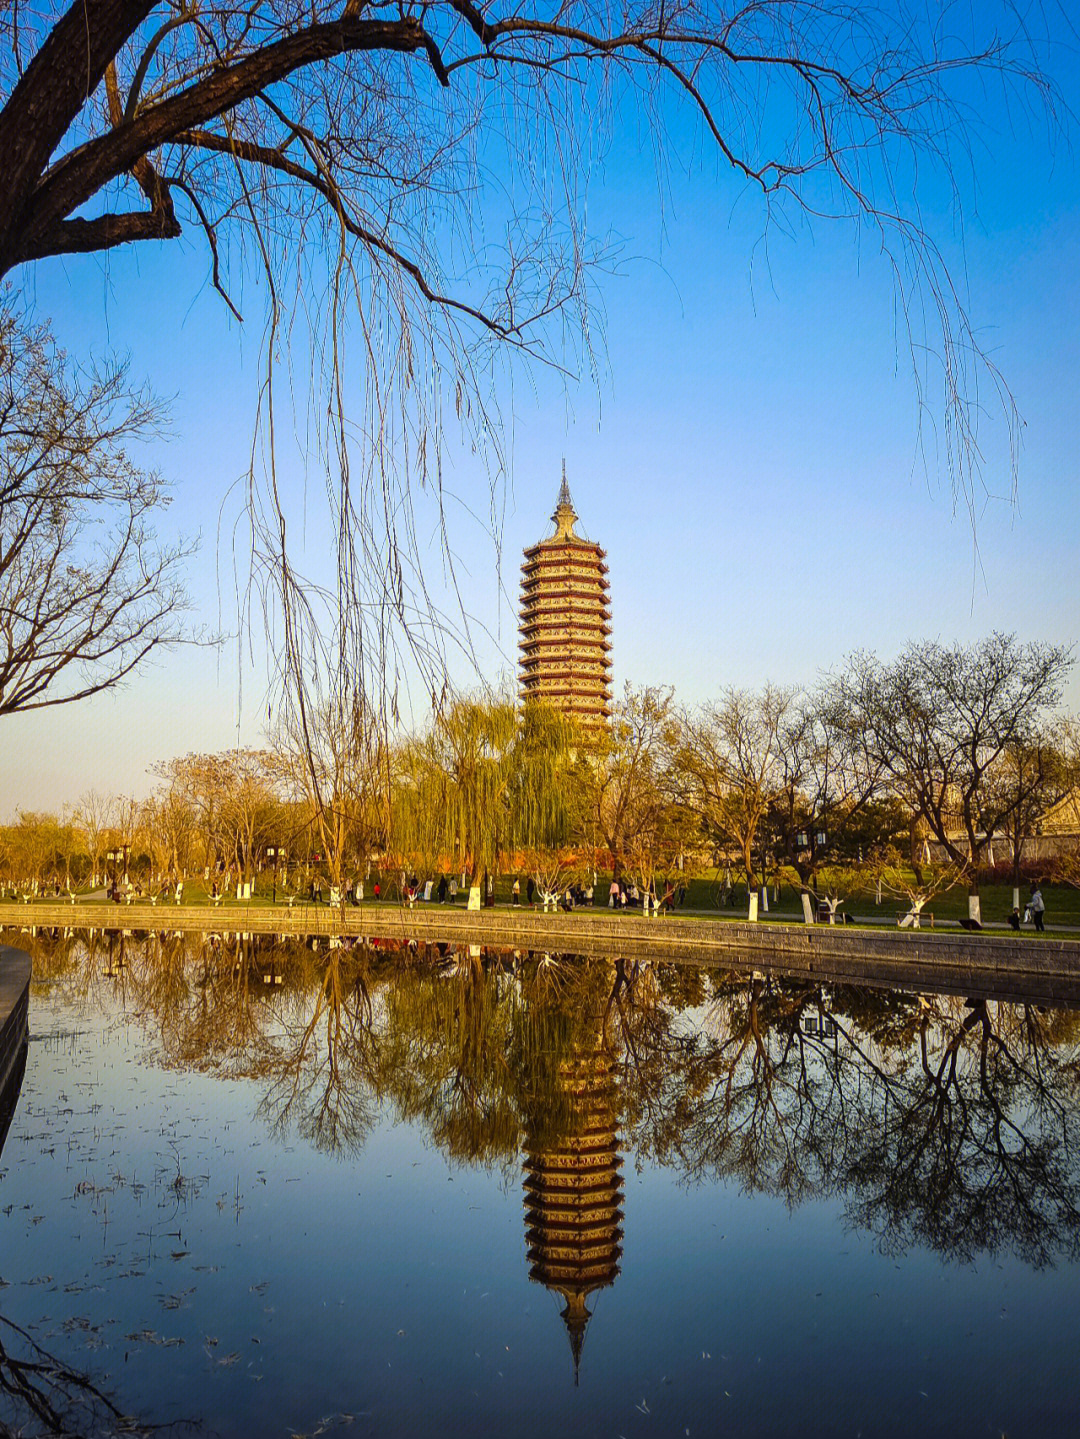 北京通州旅游景点排名图片